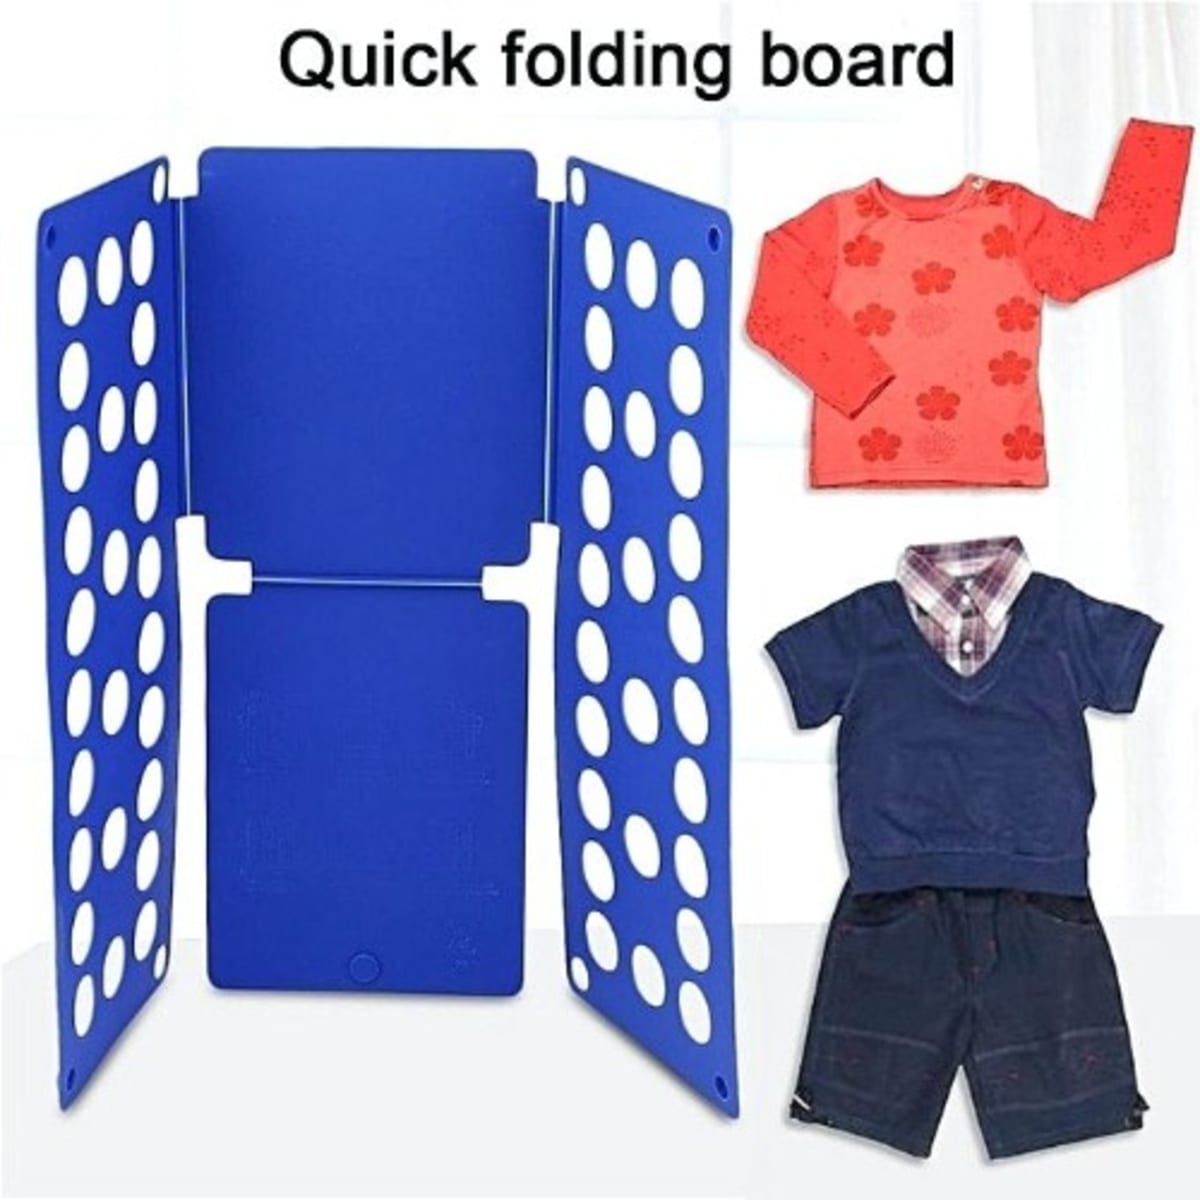 Clothing & Laundry Folding Board